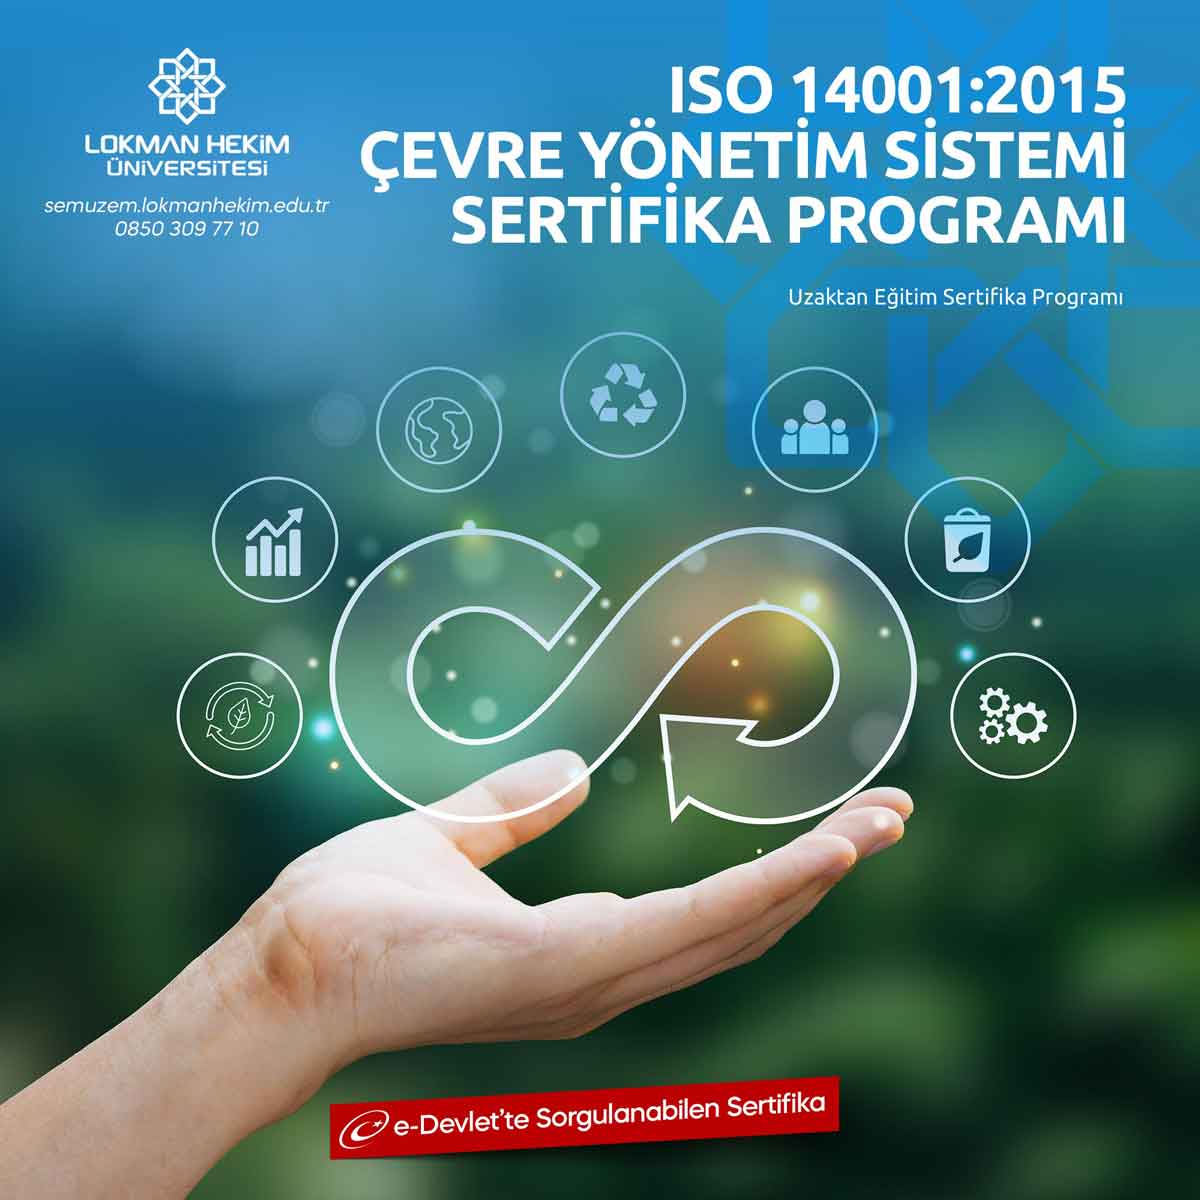 ISO 14001:2015 Çevre Yönetim Sistemi Sertifikası Nedir, Nasıl Alınır?